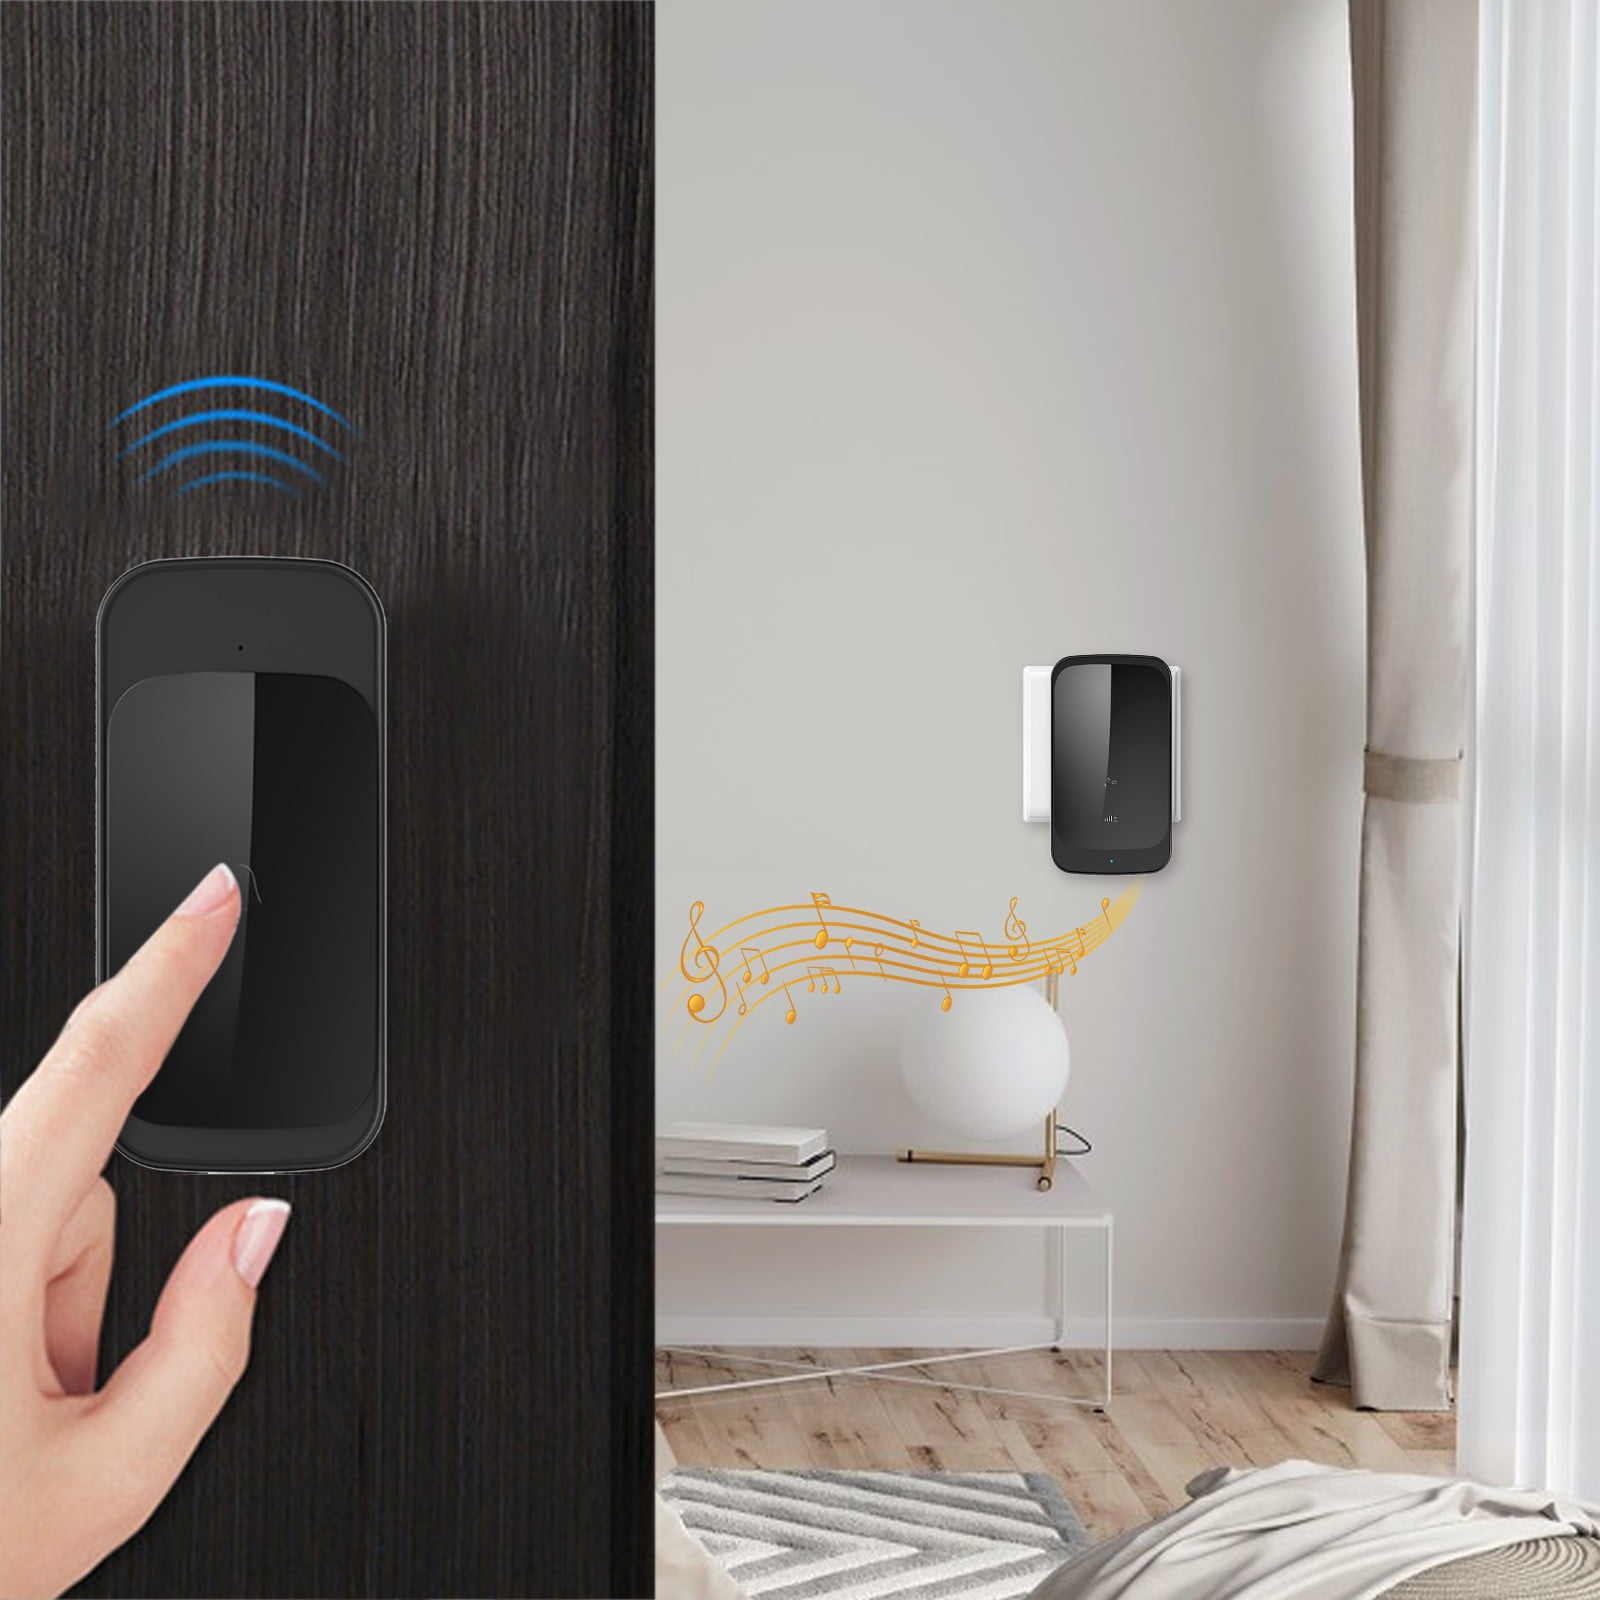 SuoKom Smart Doorbell Wireless Doorbell Waterproof Mini House Door Bell Kit  590ft Range With 58 Ringtones & 4 Level Adjust-able Volume Self-powered  Transmitter Wireless Doorbell On Clearance 